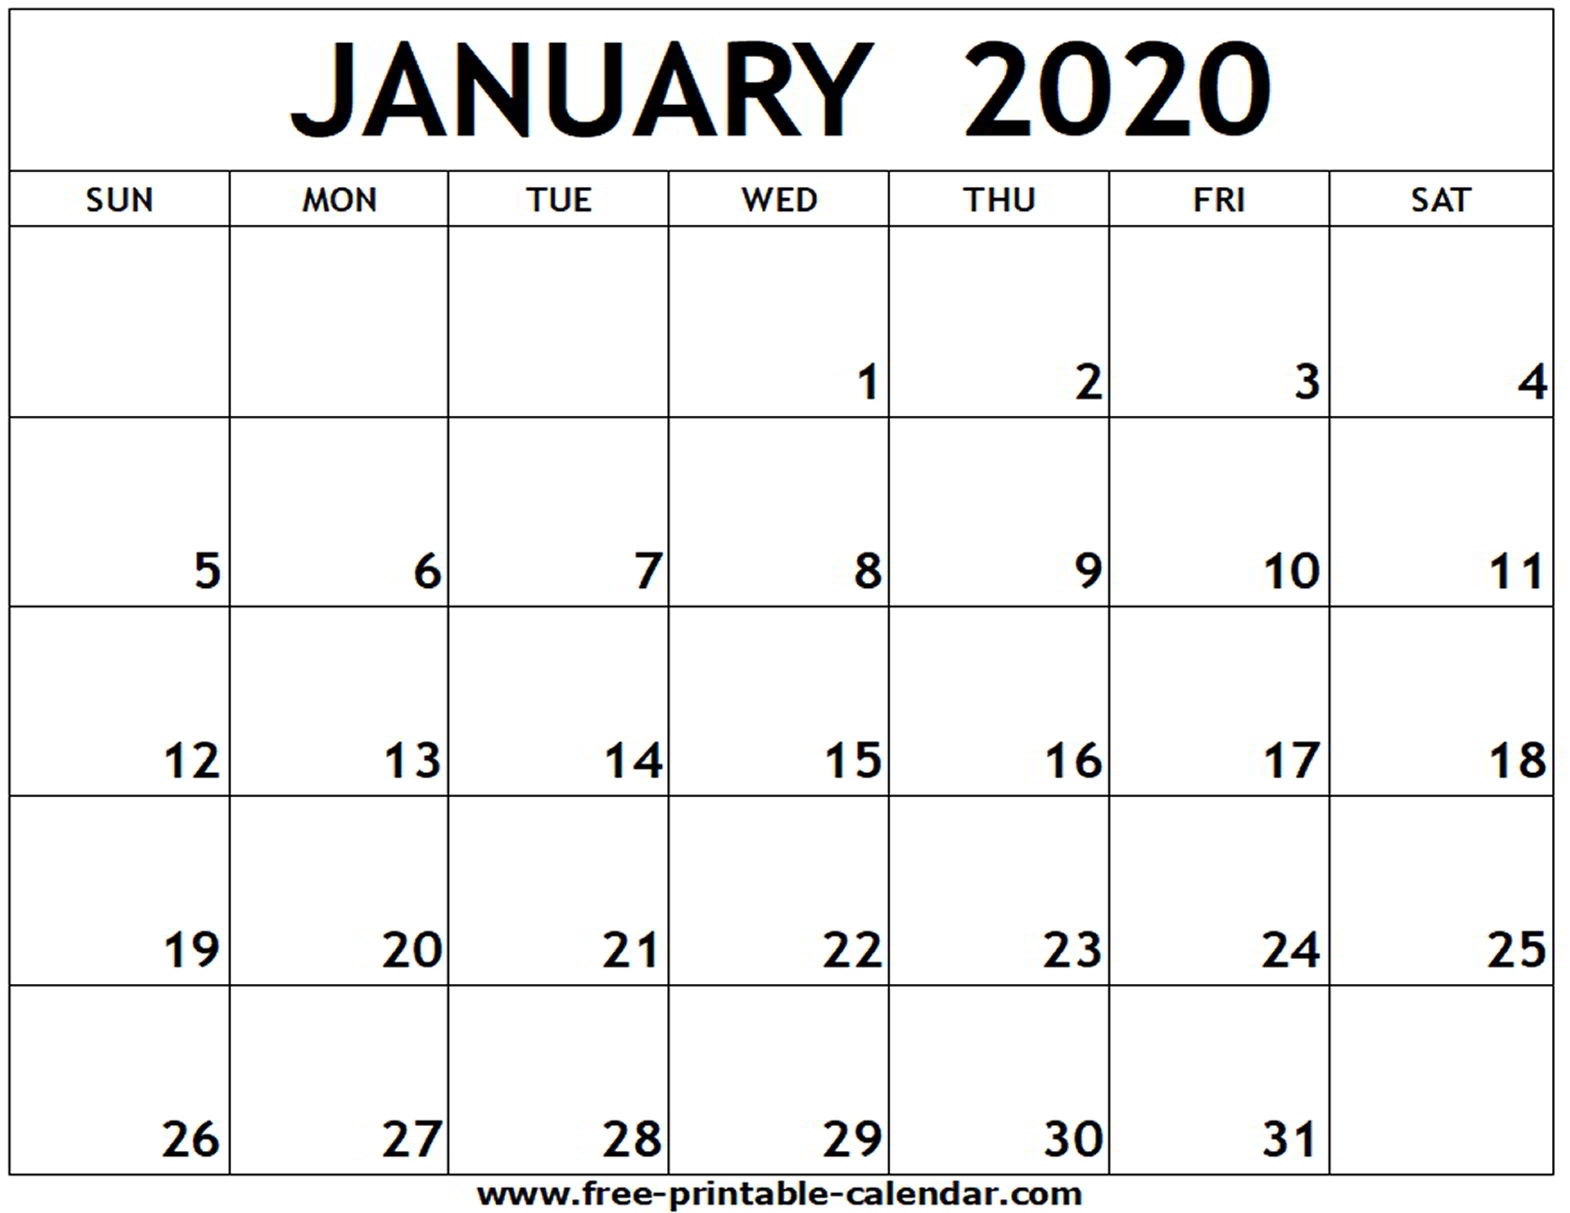 January 2020 Printable Calendar - Free-Printable-Calendar Remarkable Free Printable Calendar Templates 2020